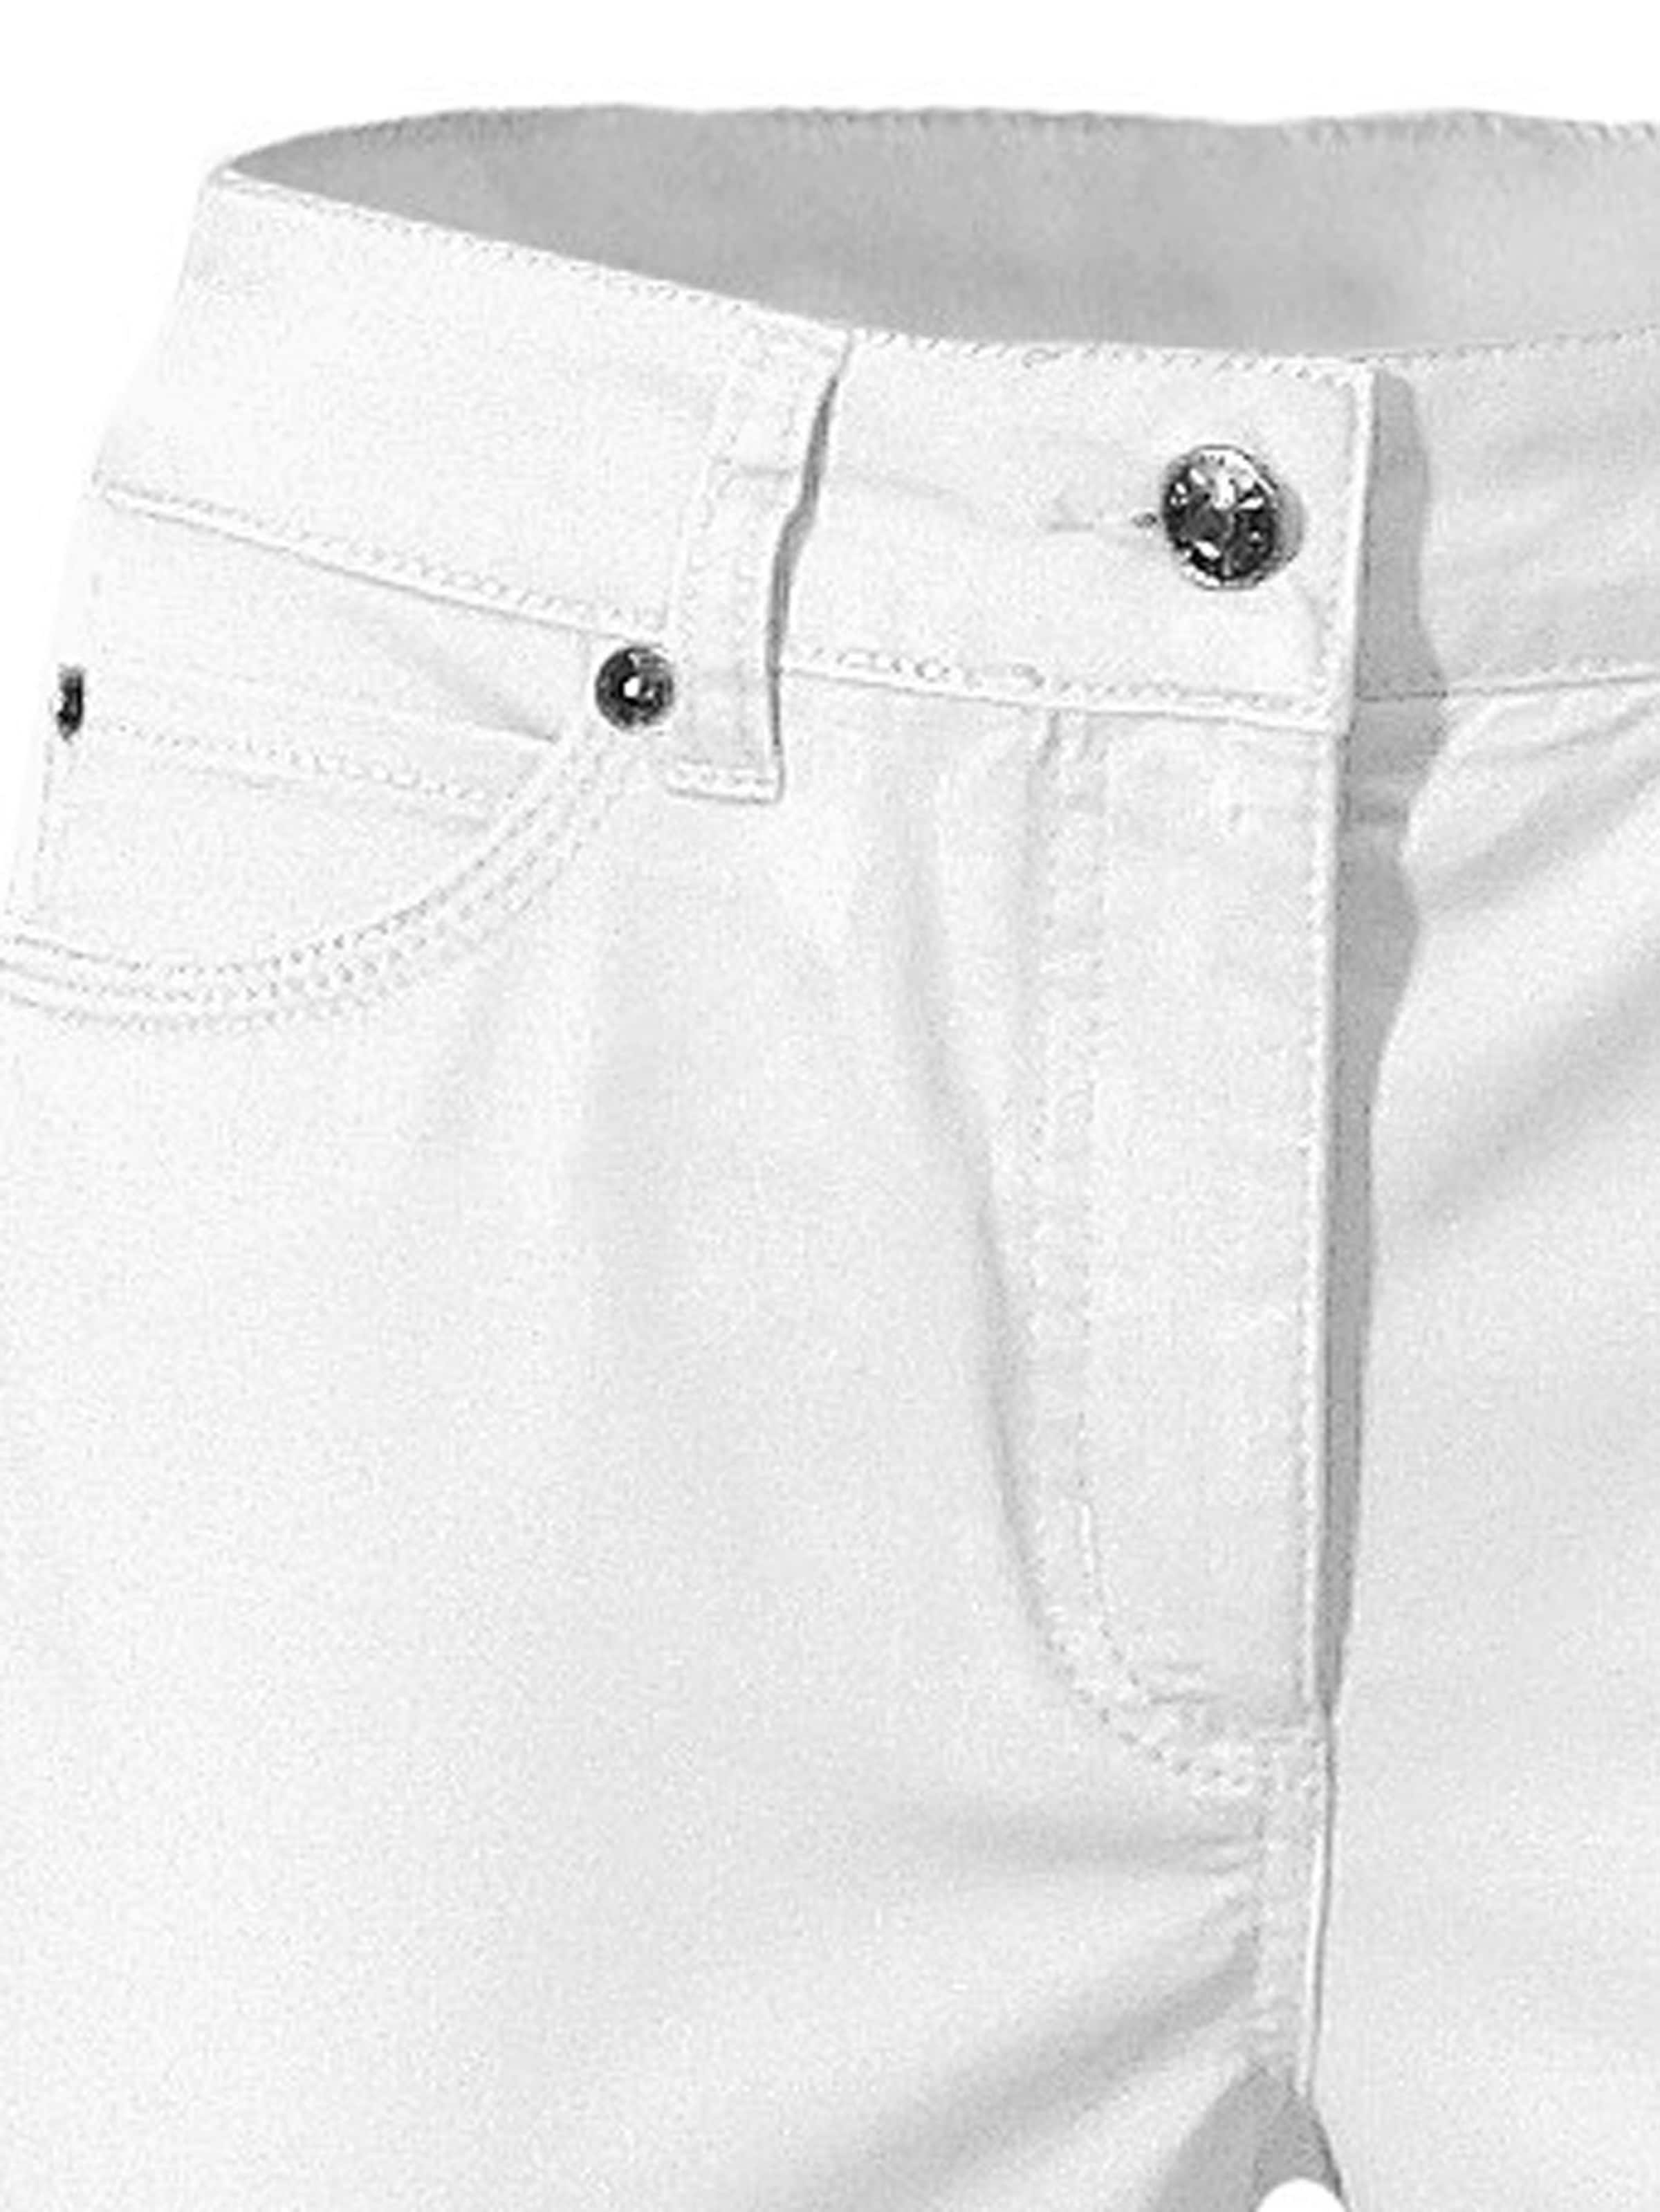 Damenmode Jeans Ashley Brooke Bauchweg-Jeans in weiß 